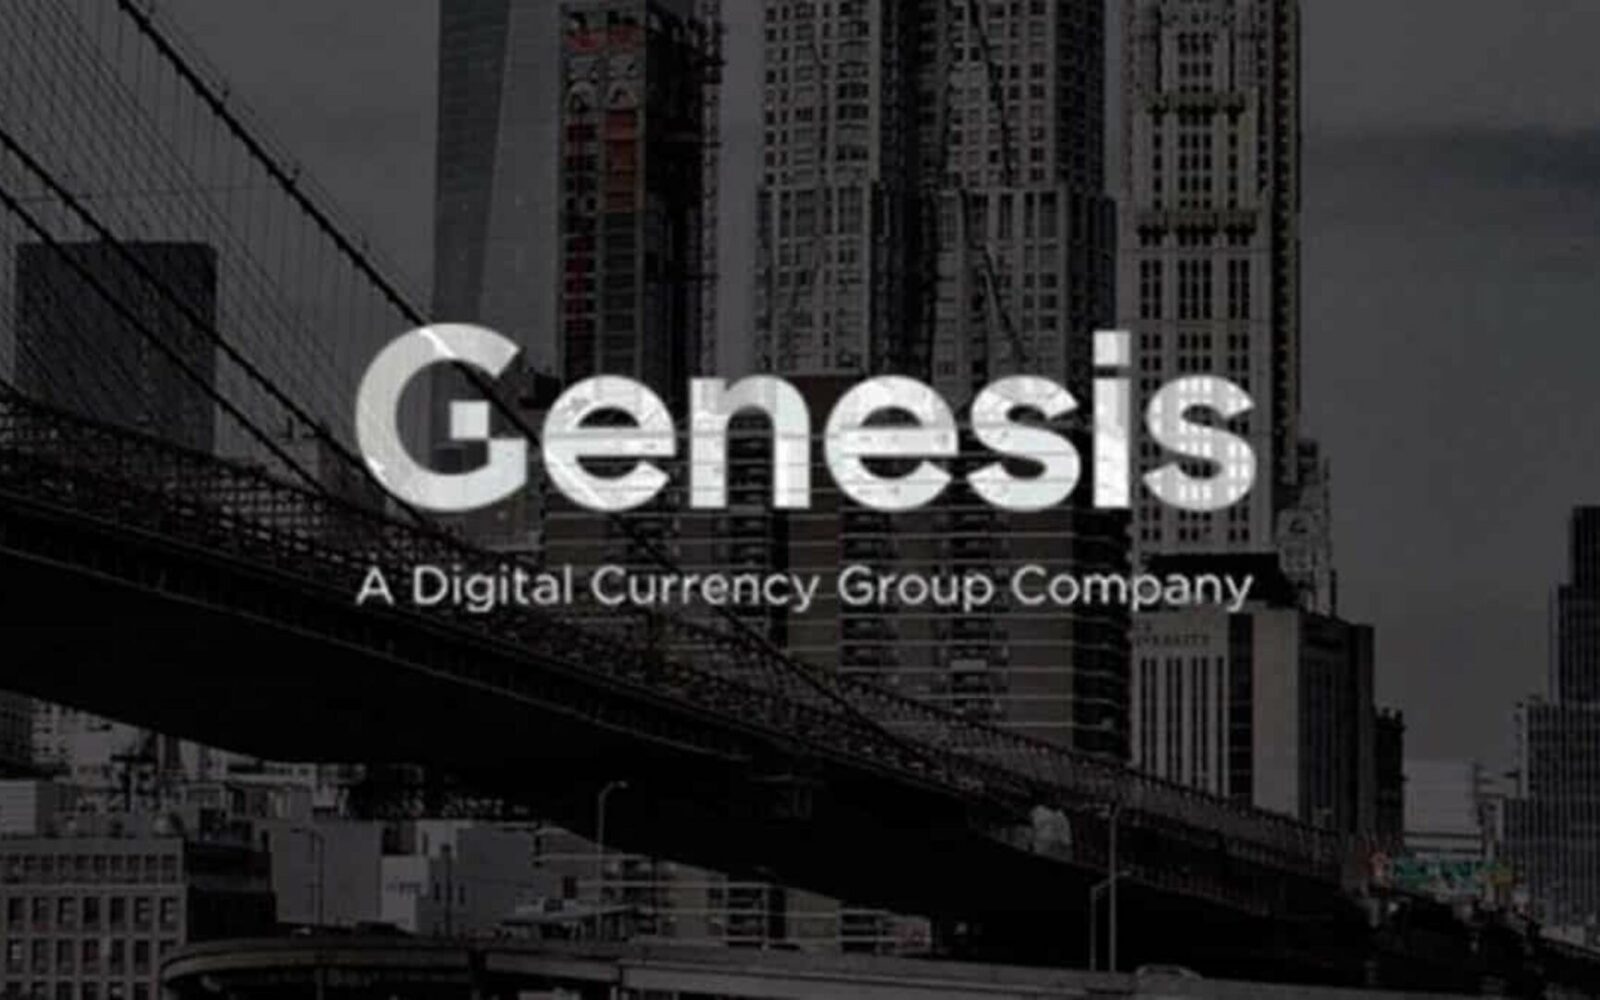 Genesis faillite